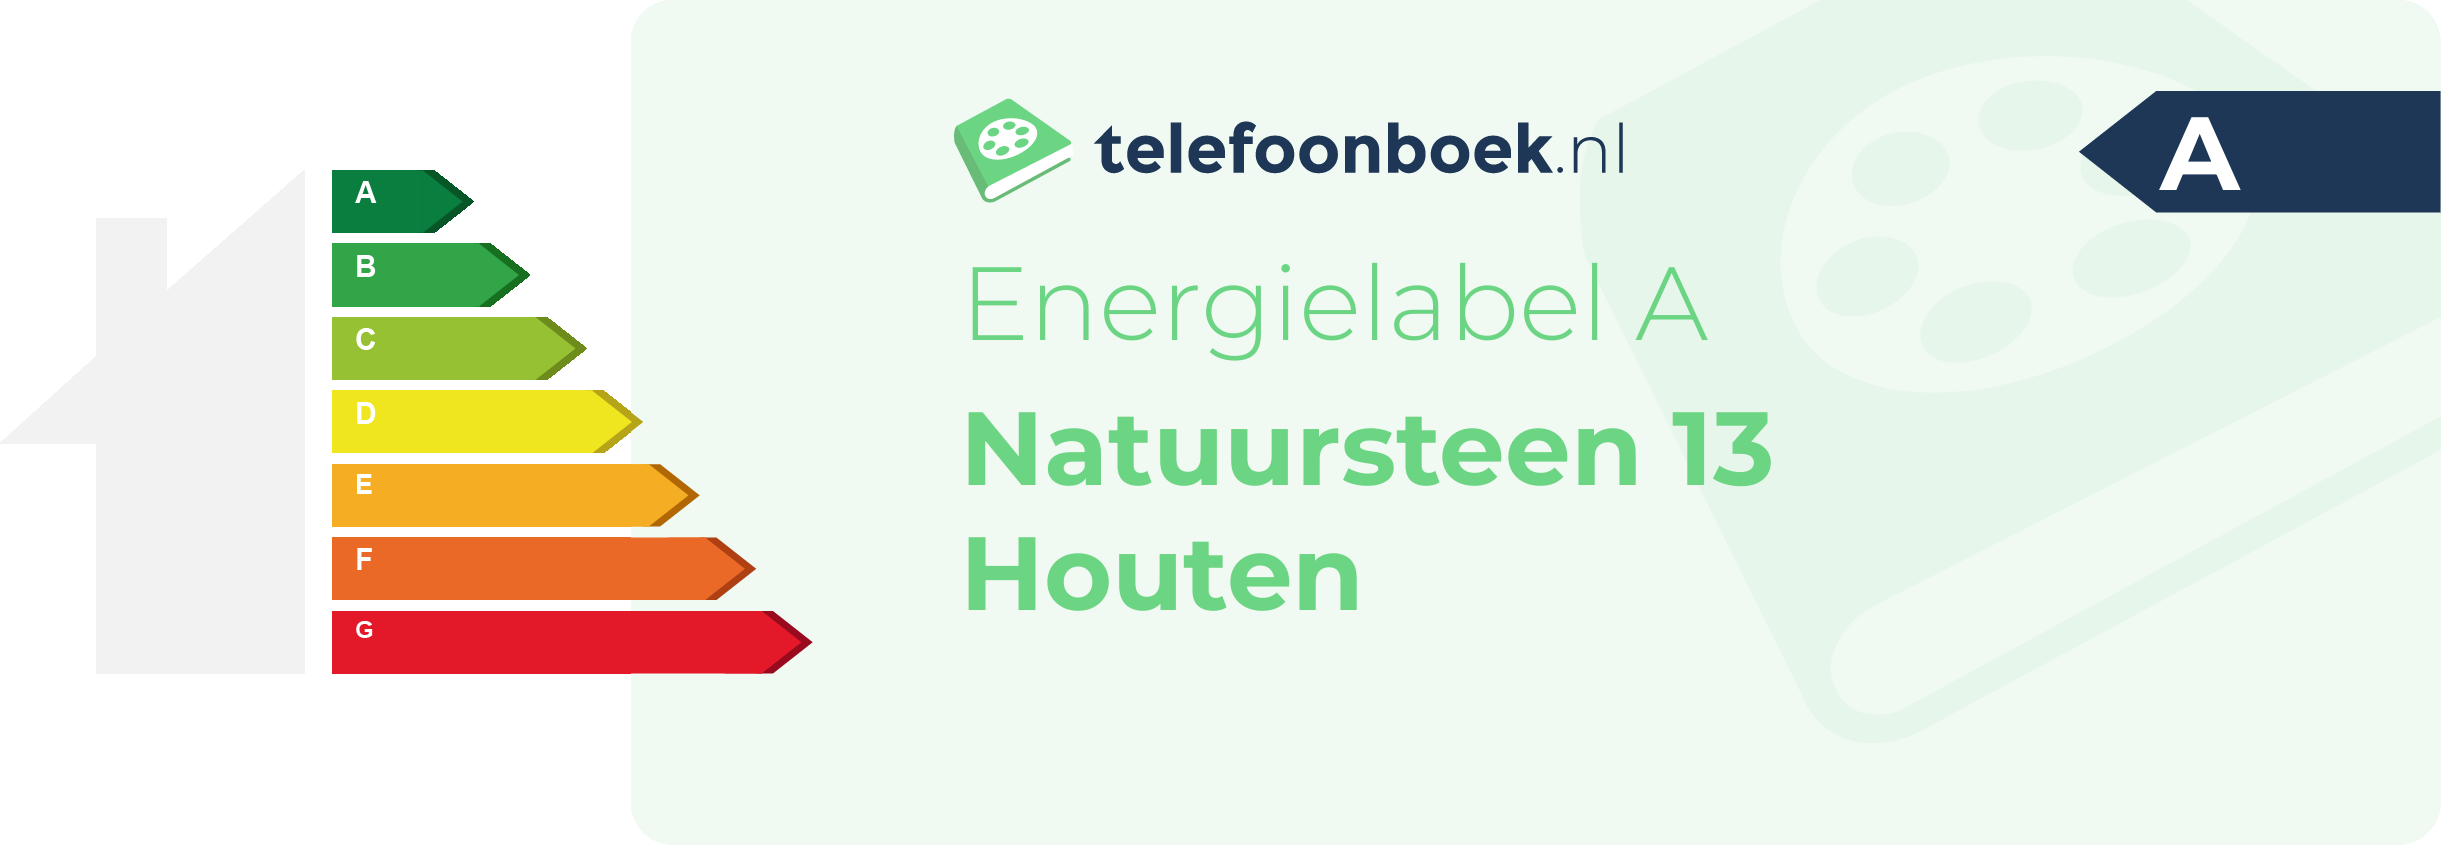 Energielabel Natuursteen 13 Houten